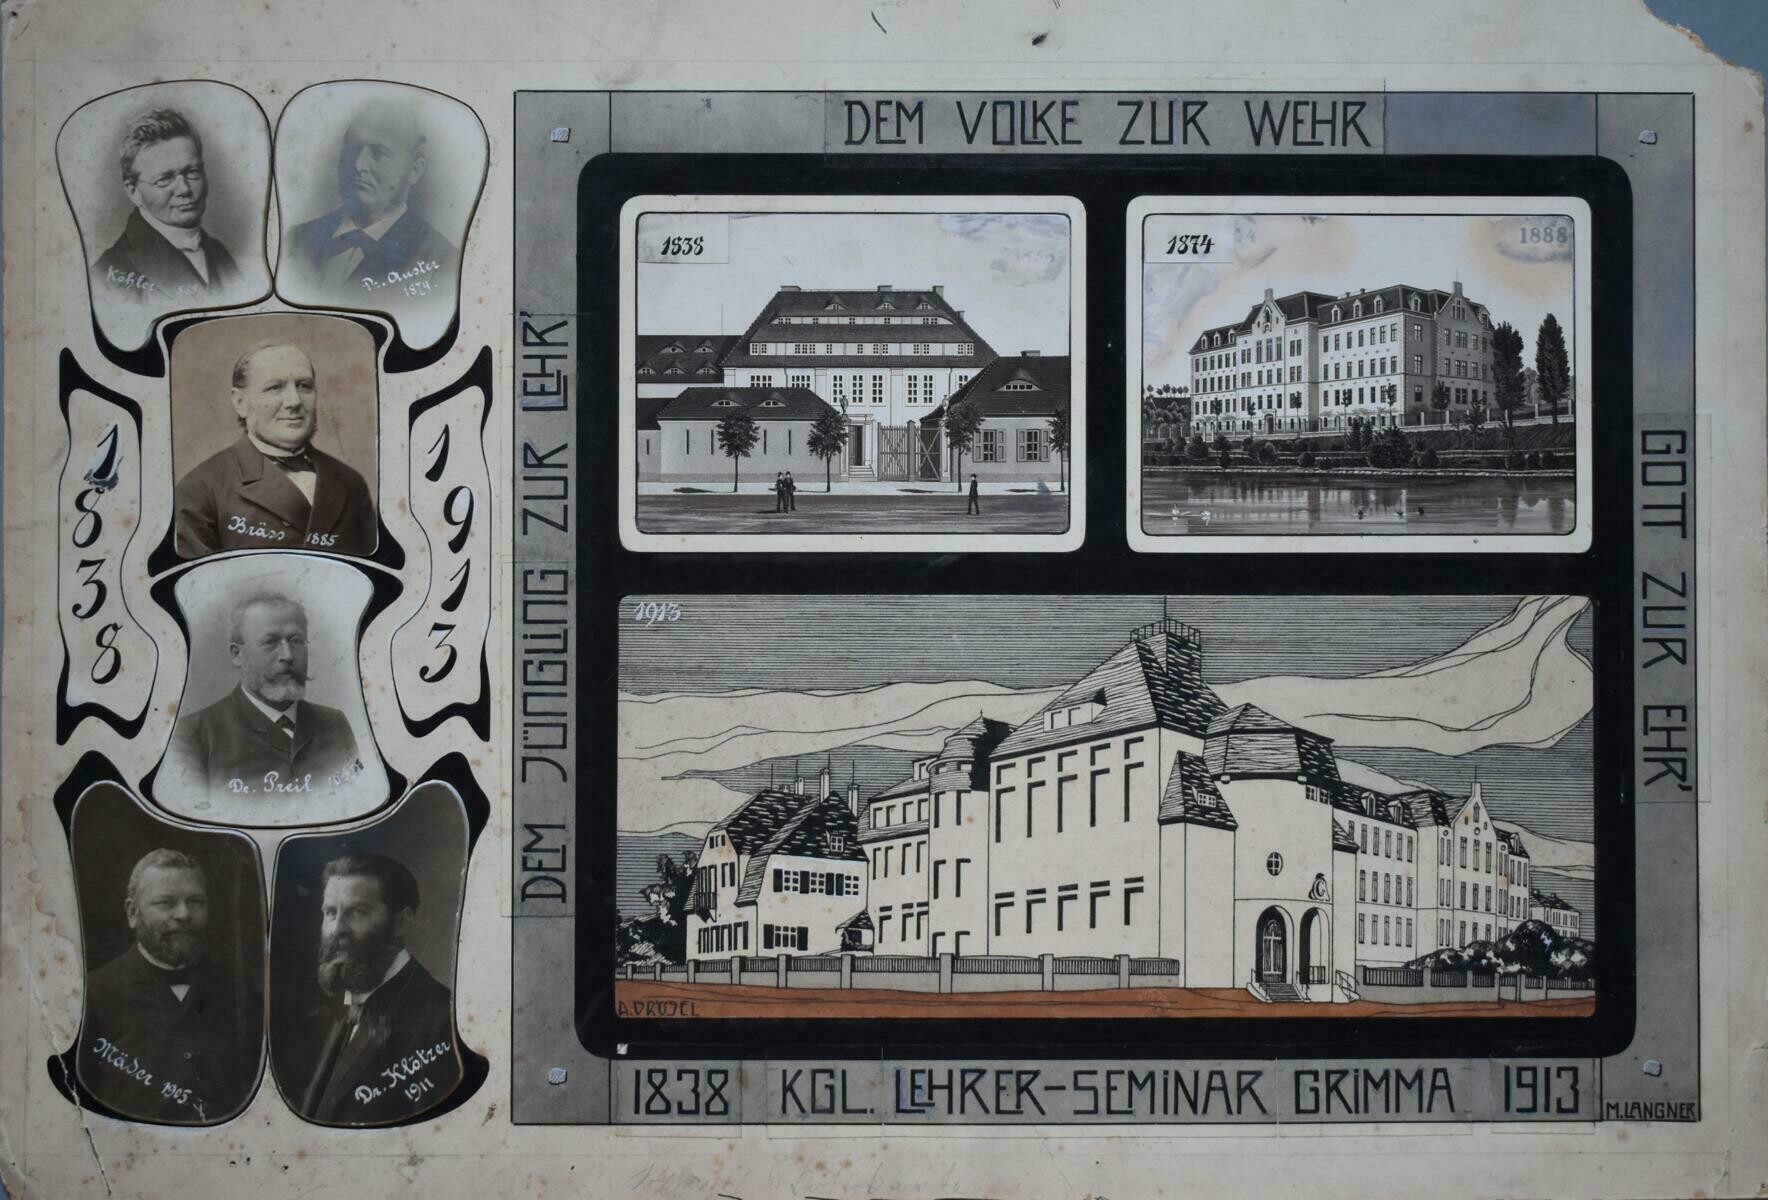 75 Jahre Lehrerseminar Grimma (Kreismuseum Grimma RR-F)